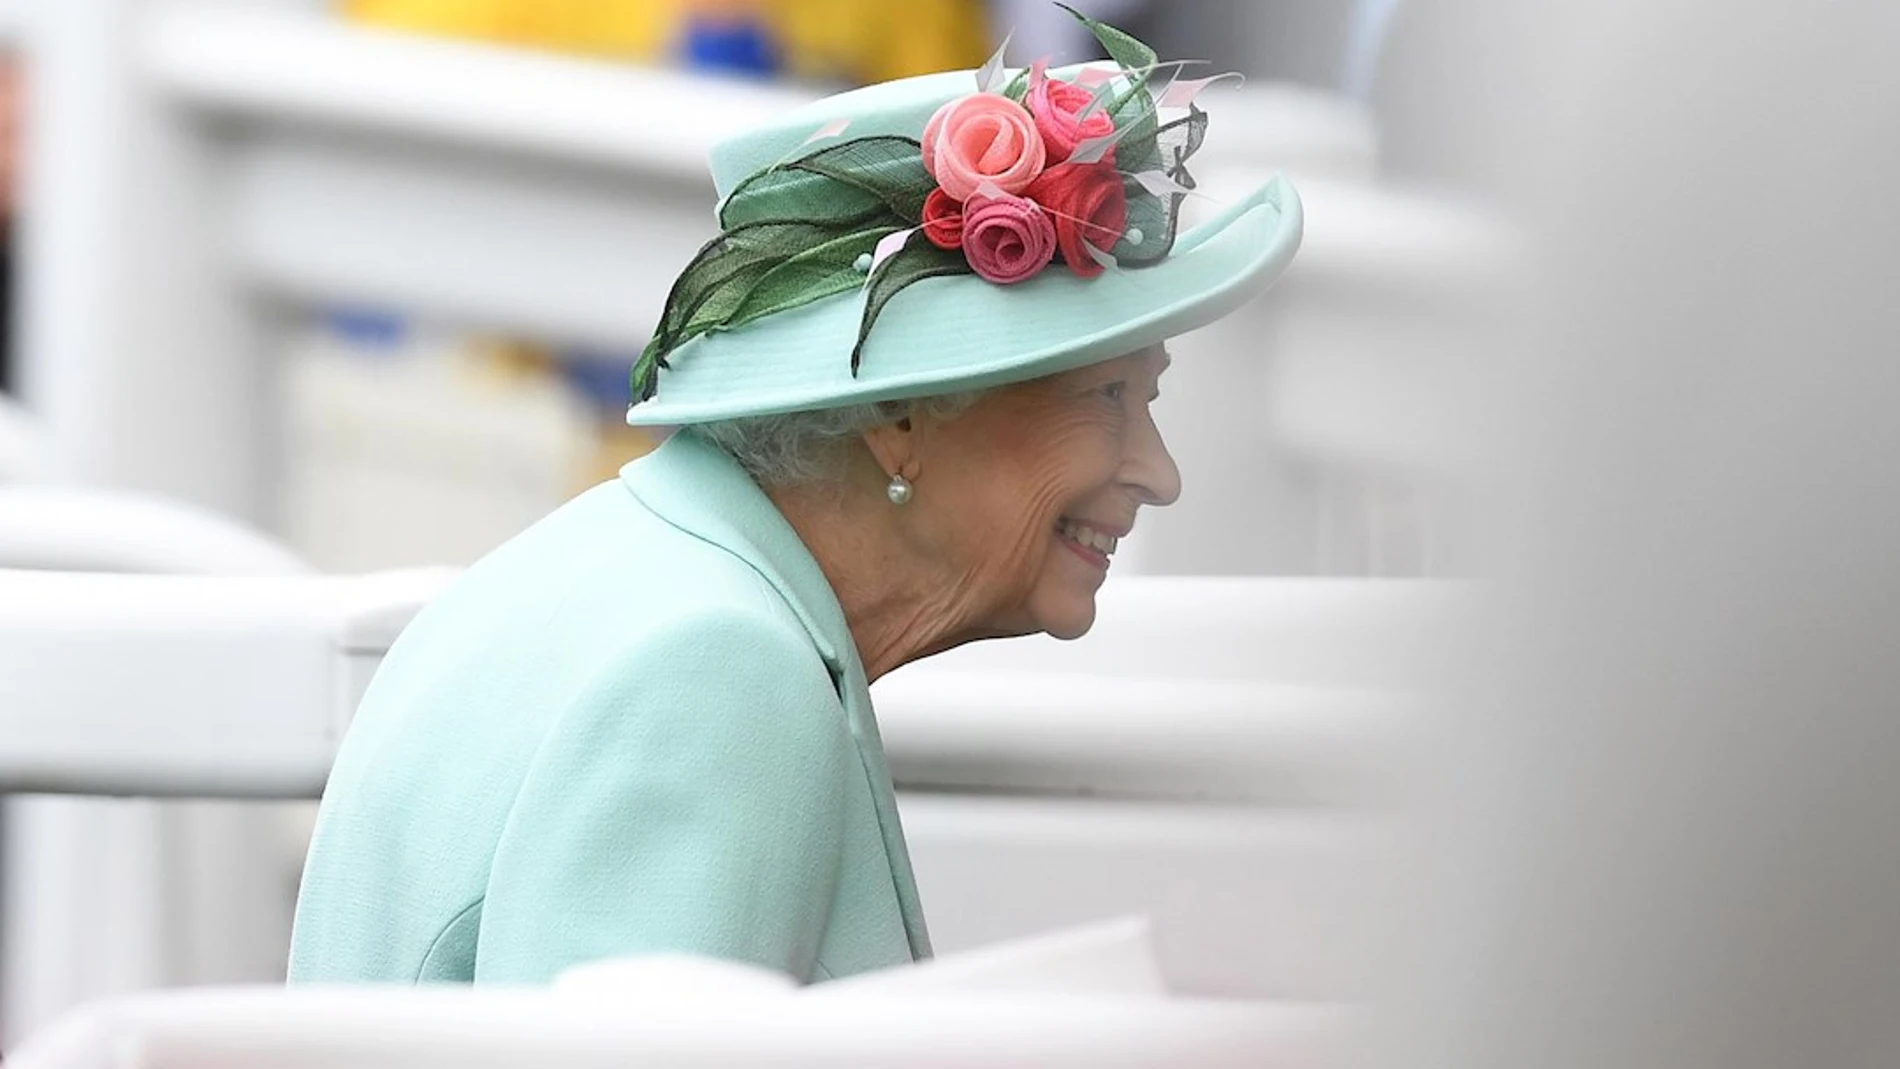 La reina Isabel II reaparece en público tras ausentarse de varios eventos por problemas de salud